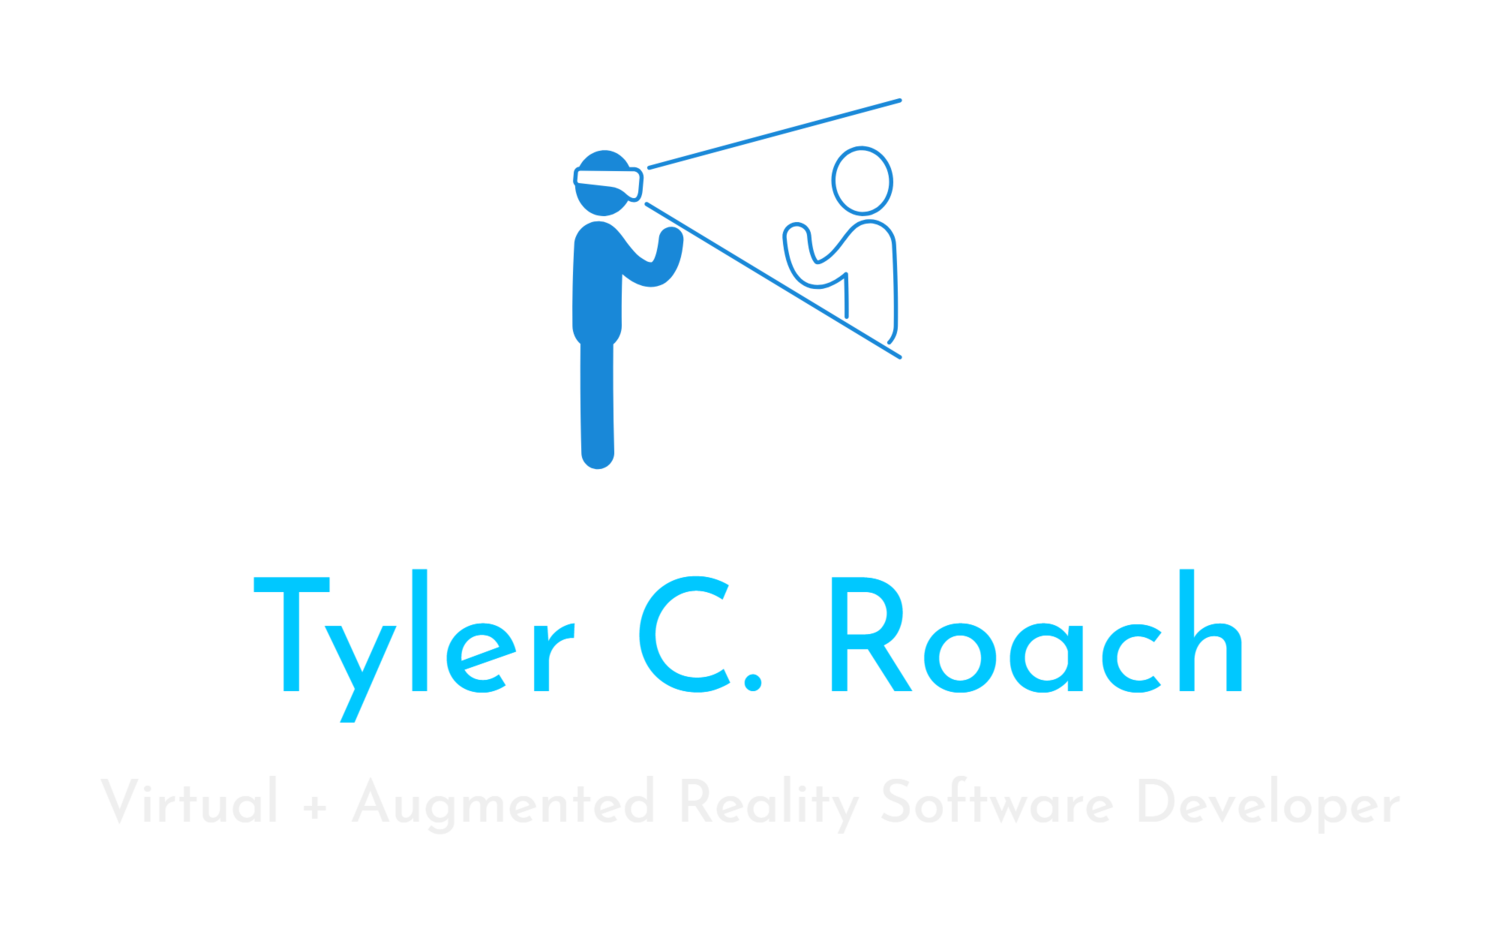 Website of Tyler C. Roach